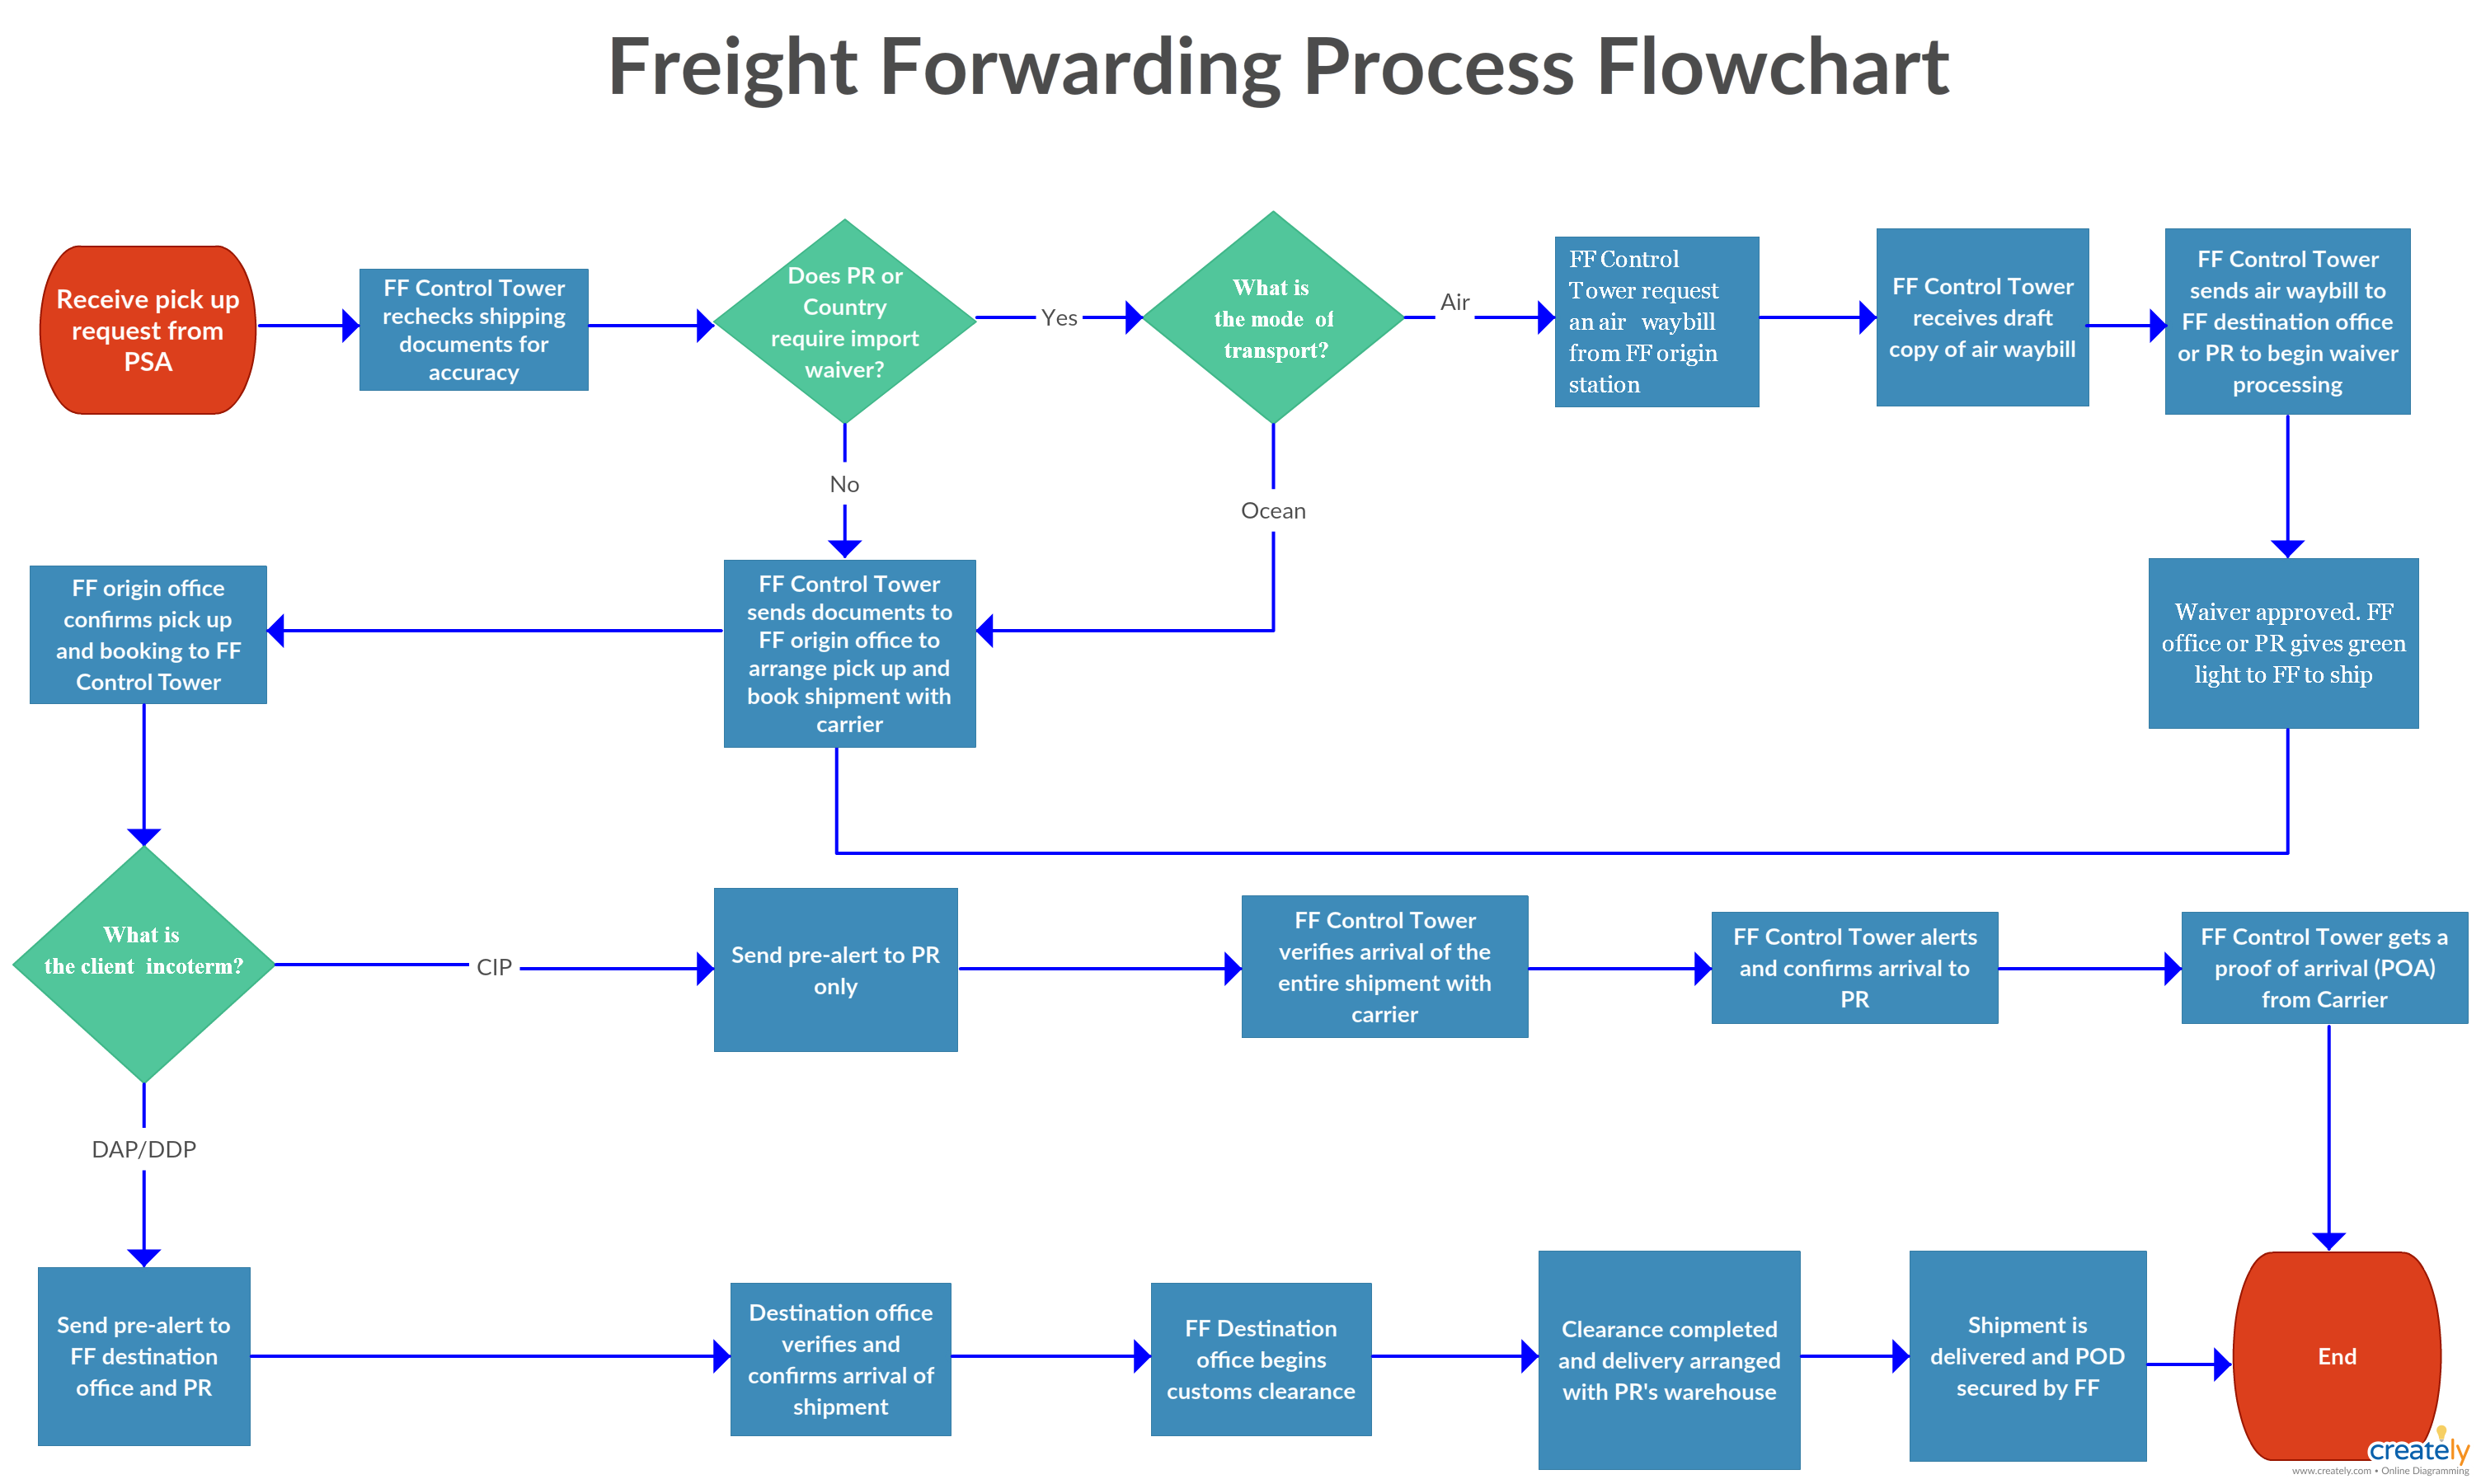 Freight Forwarding Process Flowchart The Freight ERModelExample com